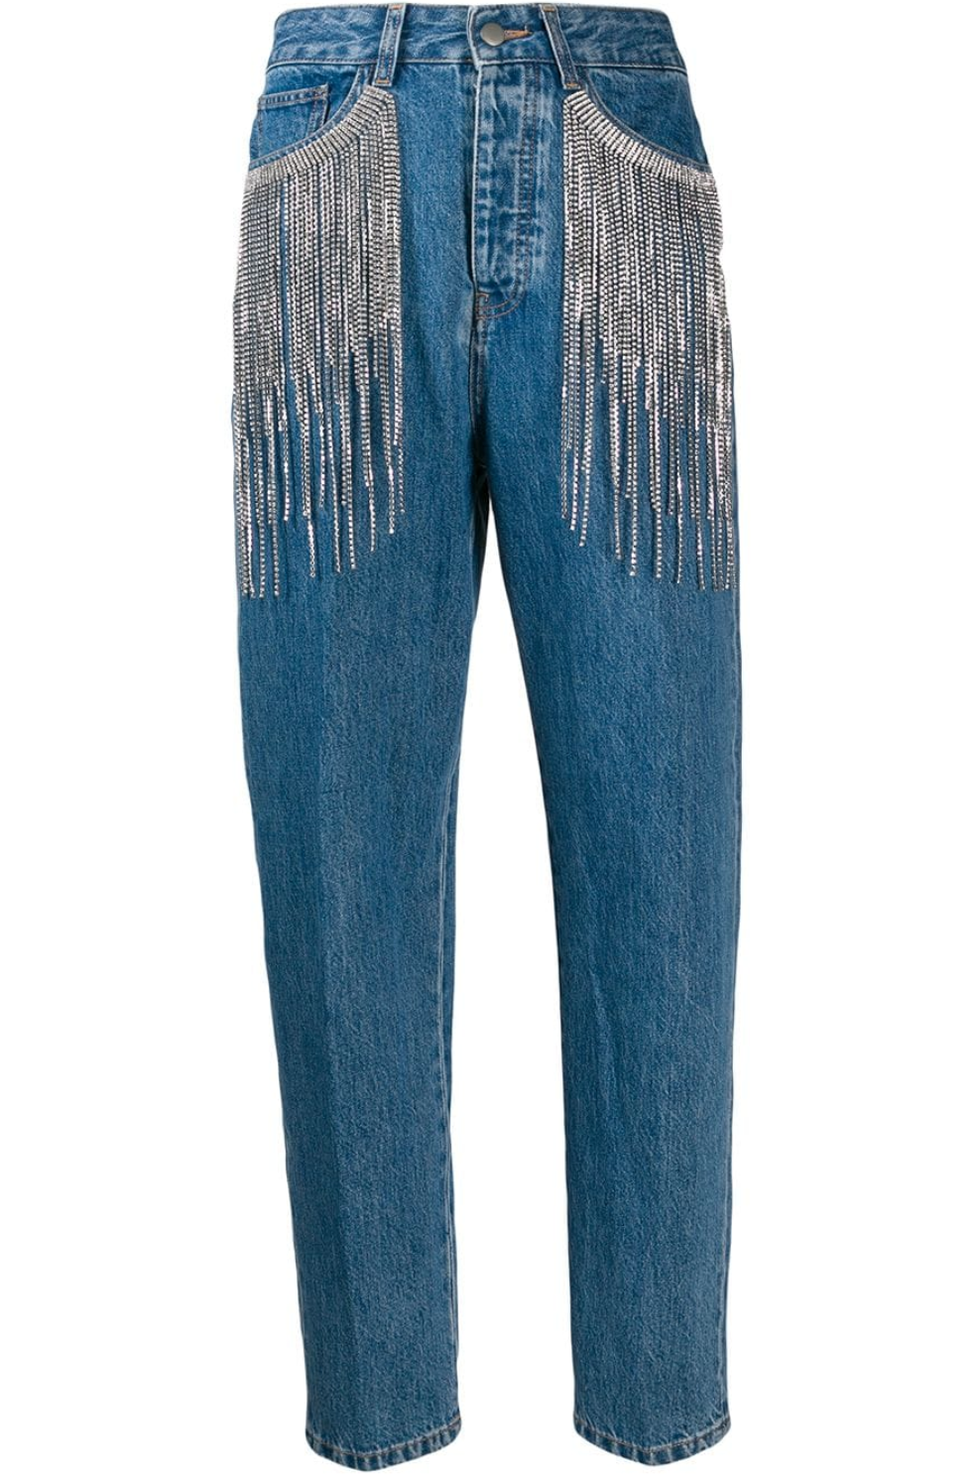 La moda 2019 ti sorprende con il denim perché come sfrangiare i jeans aggiungendo glam è presto fatto con i mom jeans di Circus Hotel con frange di cristalli.